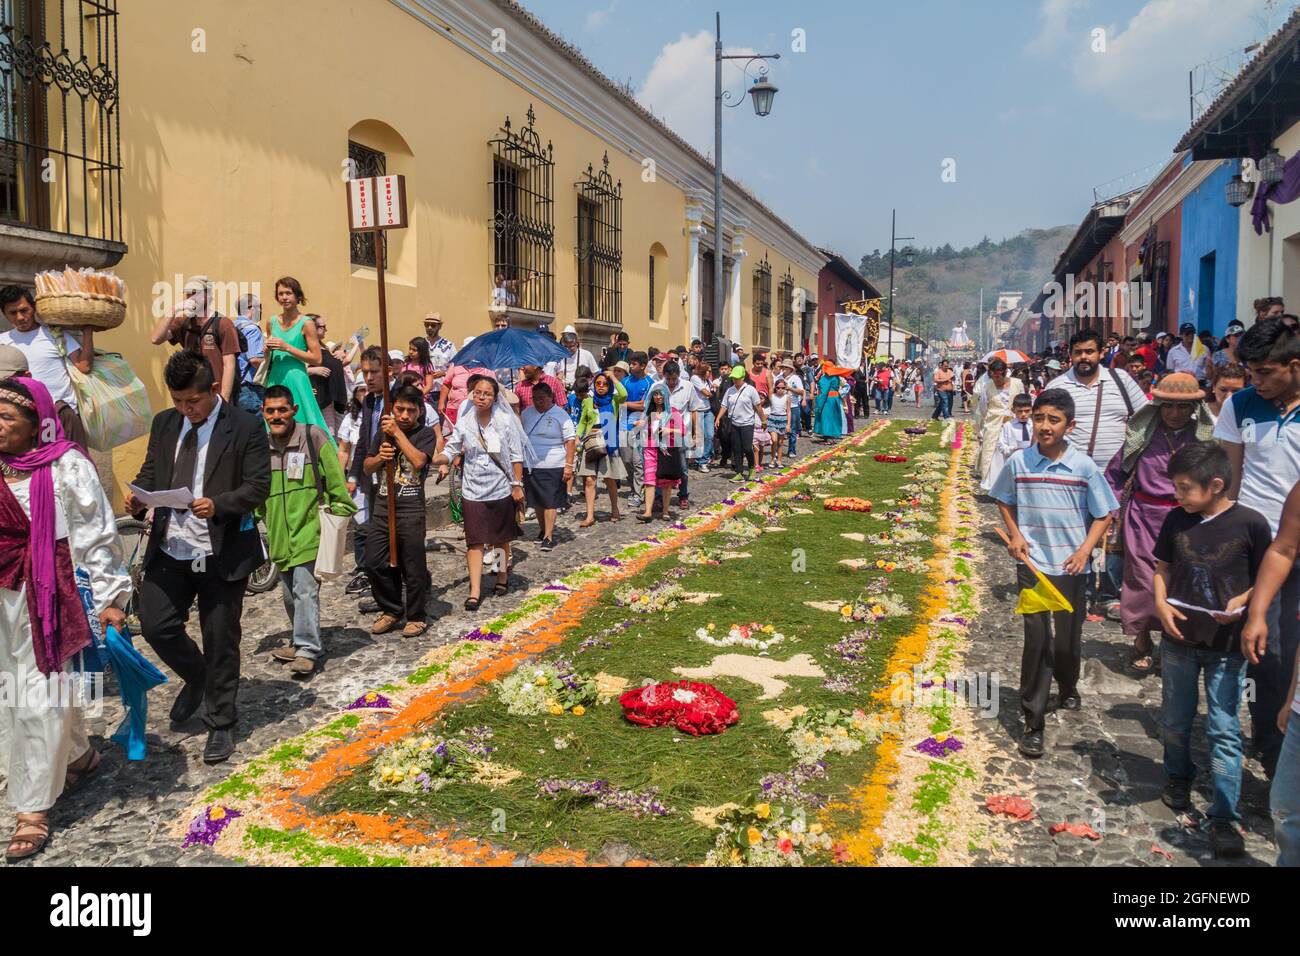 ANTIGUA, GUATEMALA - 27. MÄRZ 2016: Die Teilnehmer der Prozession am Ostersonntag spazieren entlang des angelegten Teppichs in Antigua Guatemala-Stadt. Stockfoto